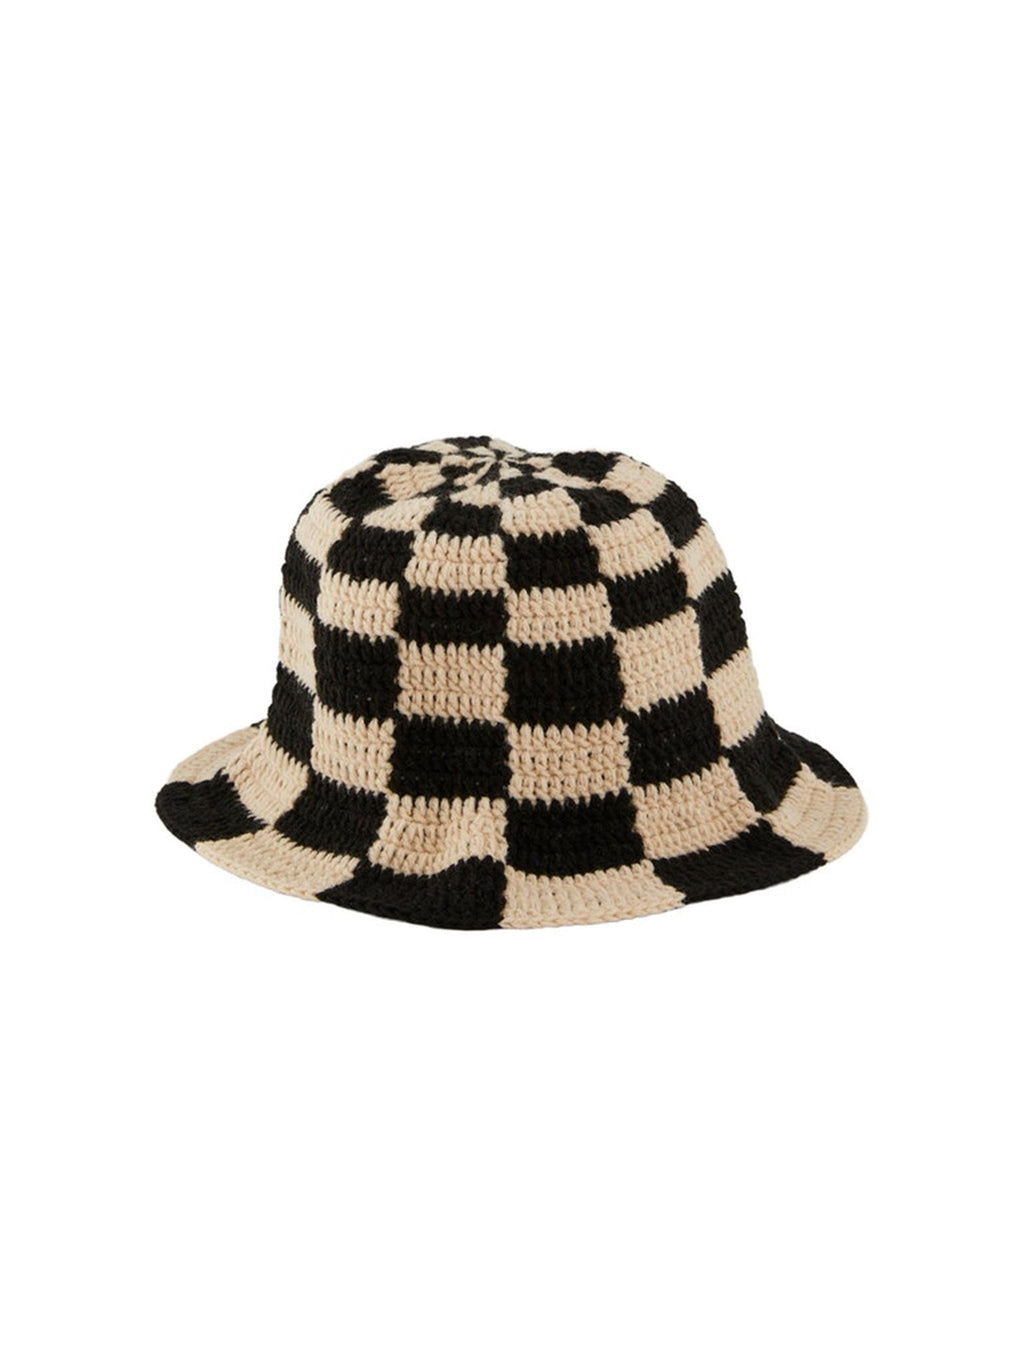 安娜针织水桶帽子 - 米色/黑色